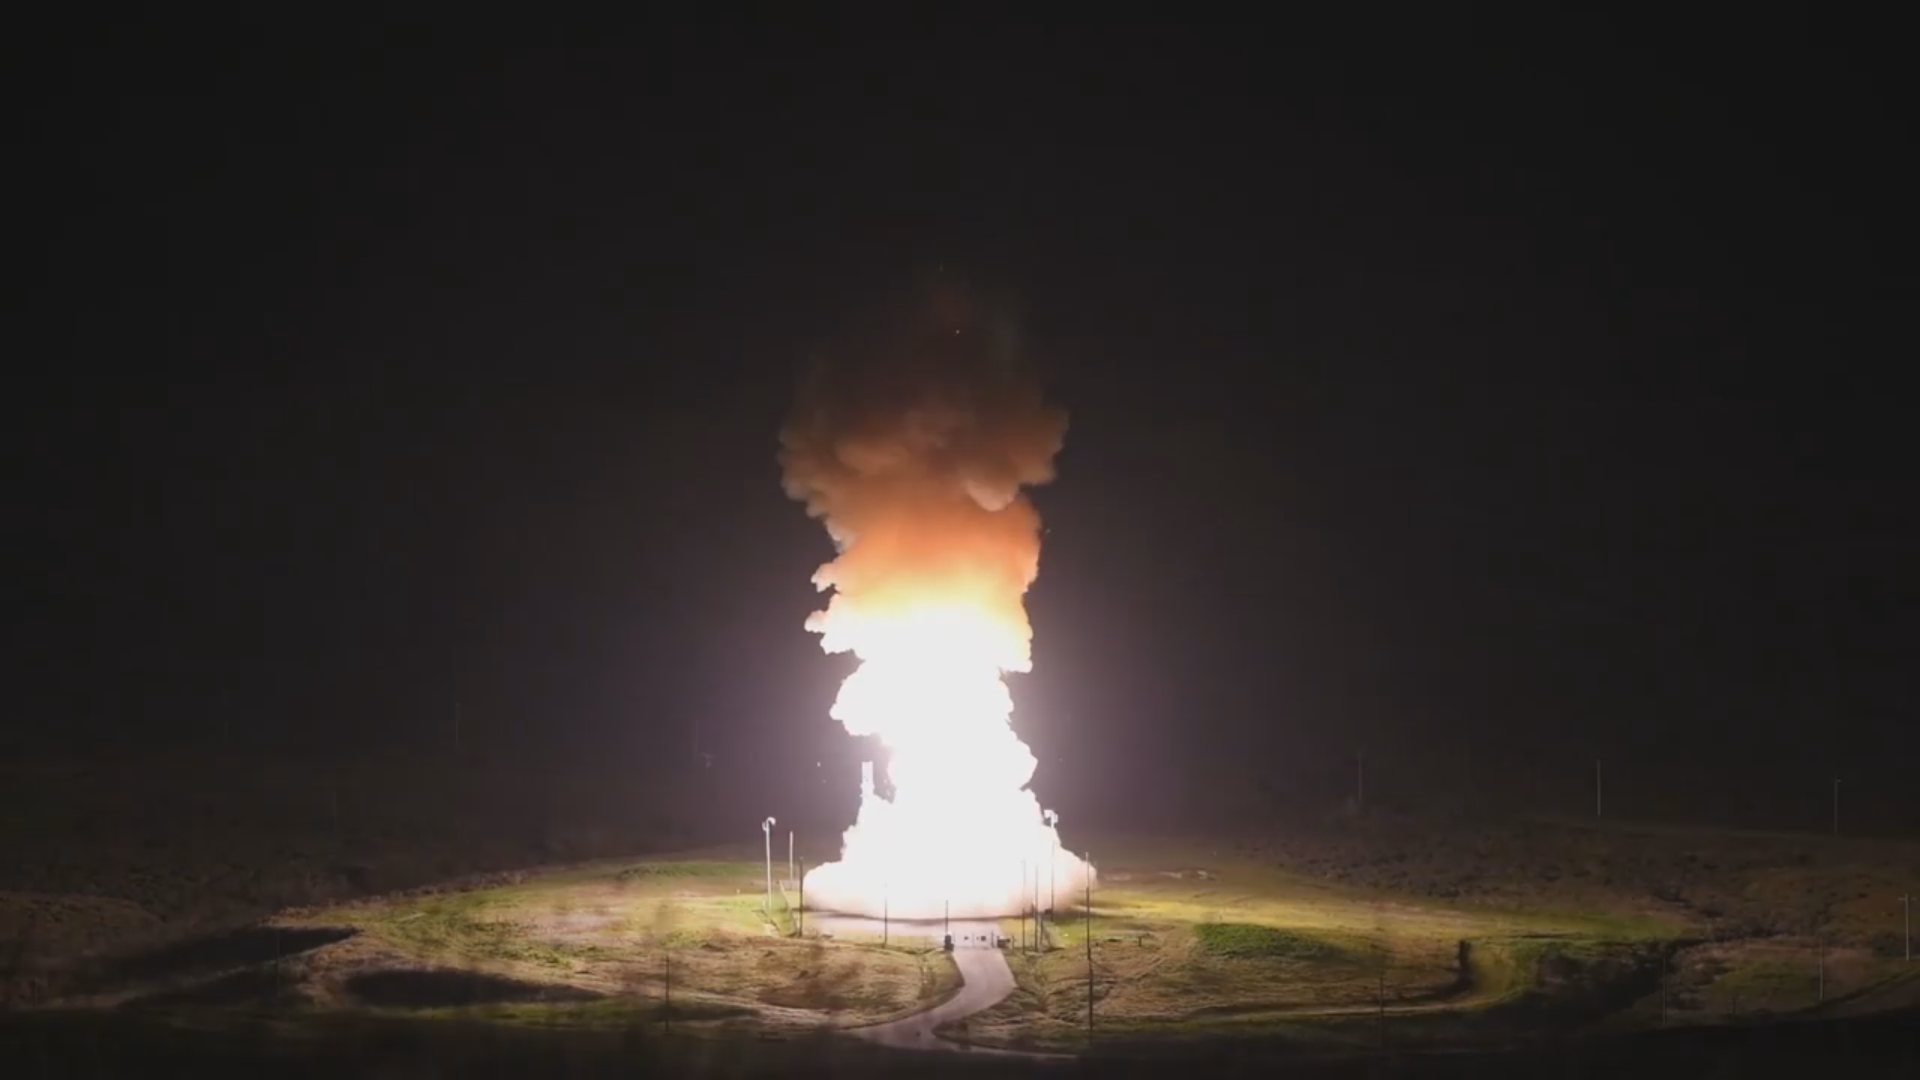 L'aeronautica statunitense mostra un raro video del lancio del missile balistico intercontinentale Minuteman III